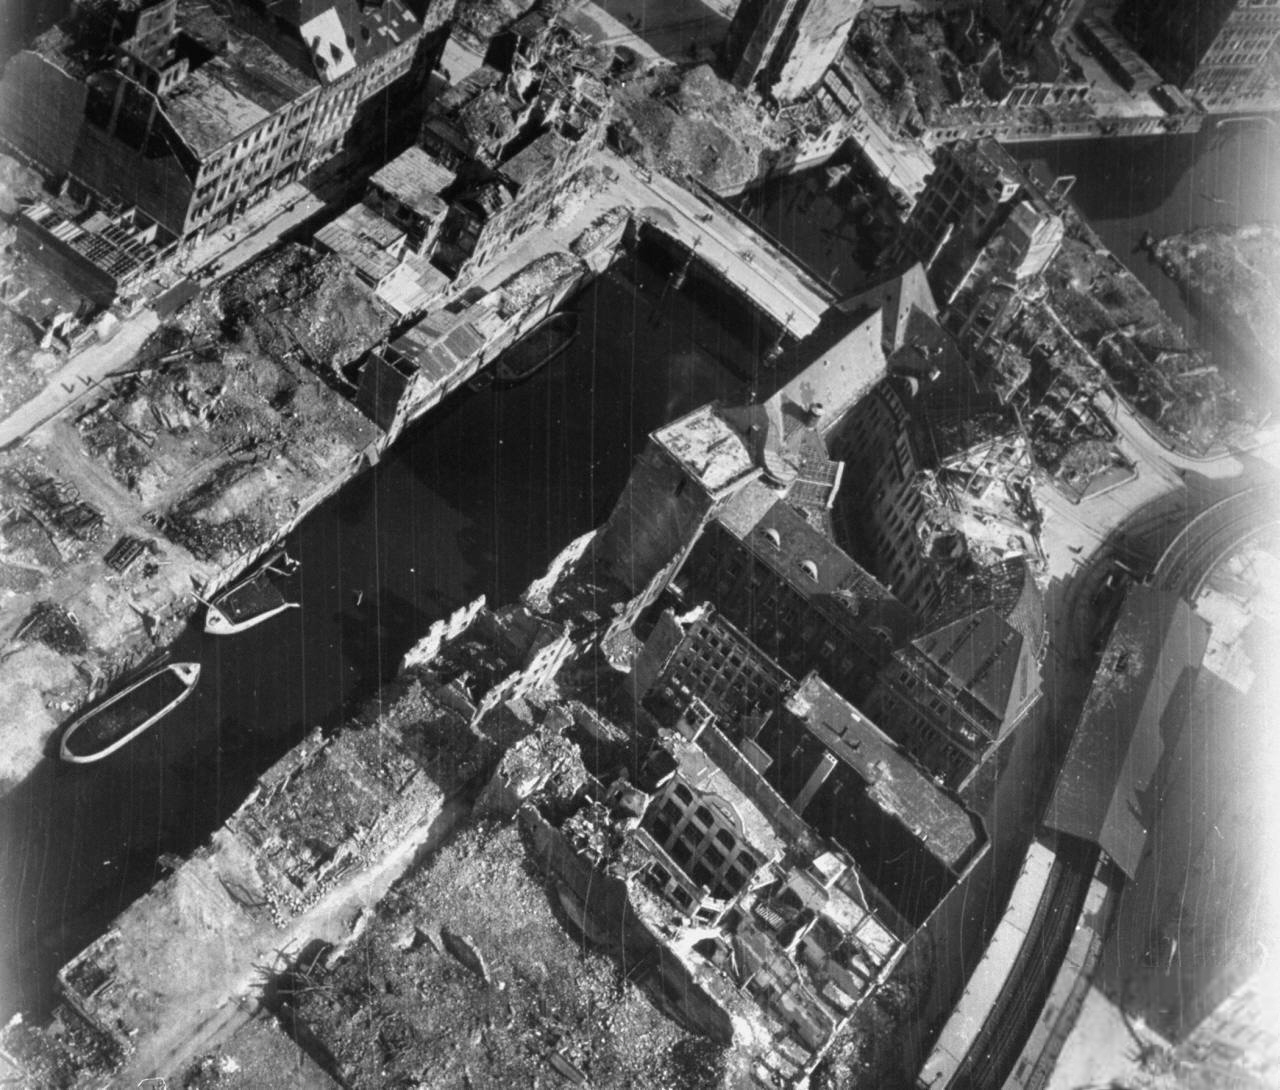 Hamburg, Germany in ruins, 1945; note Heiligengeistbrücke bridge at top